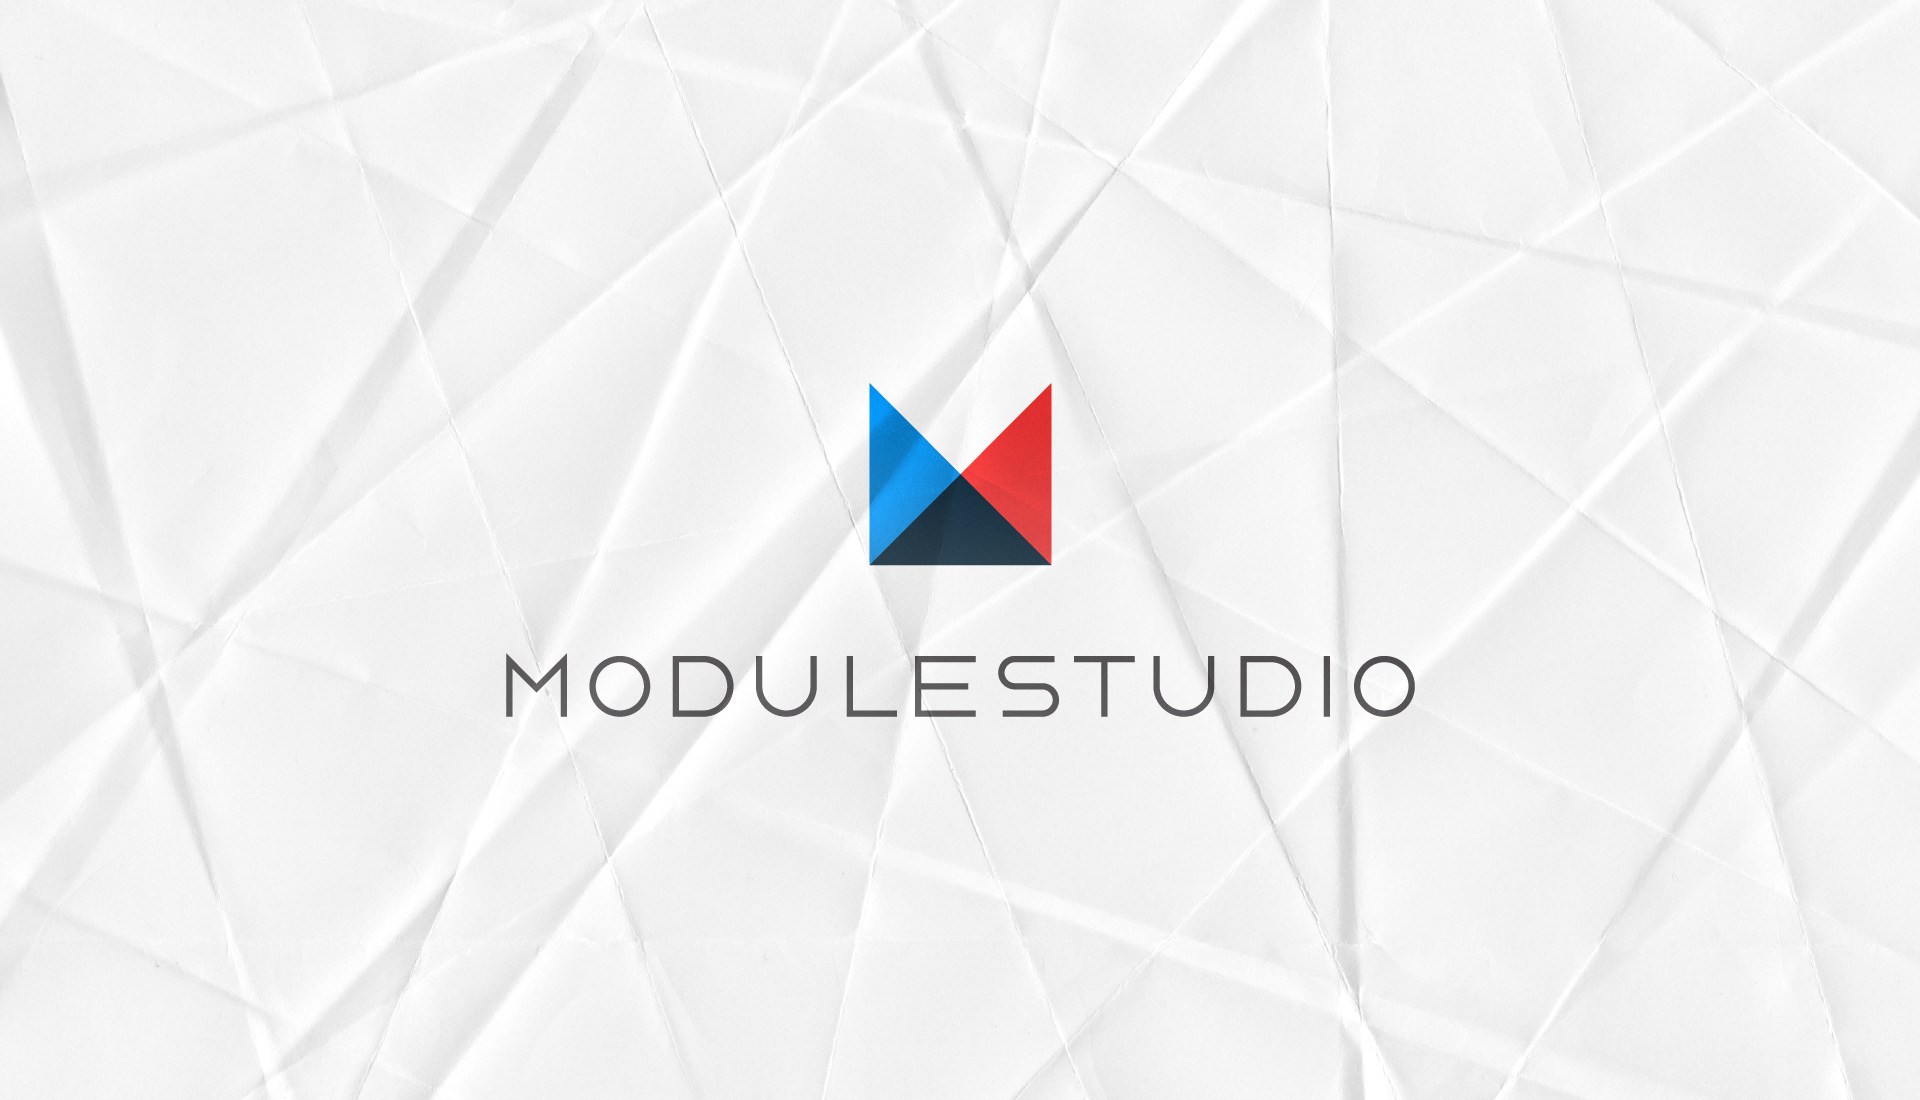 ModuleStudio 1.4.0 has been released